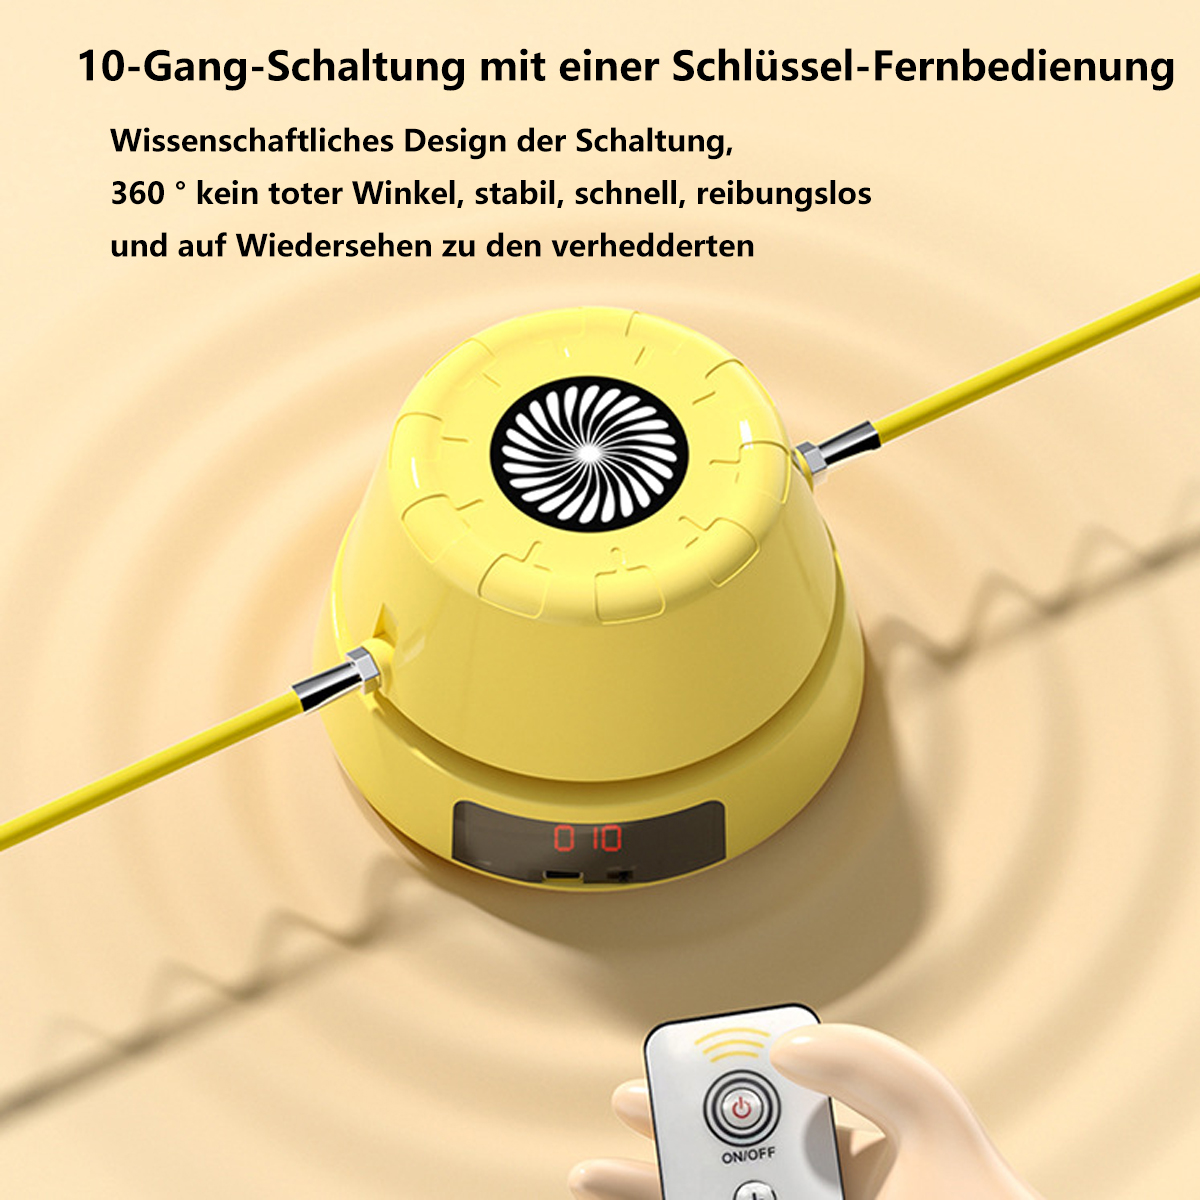 elektronischer automatische Seilsprungmaschine Zählung SYNTEK Springseilmaschine, gelb Gelb mit Seilsprungmaschine